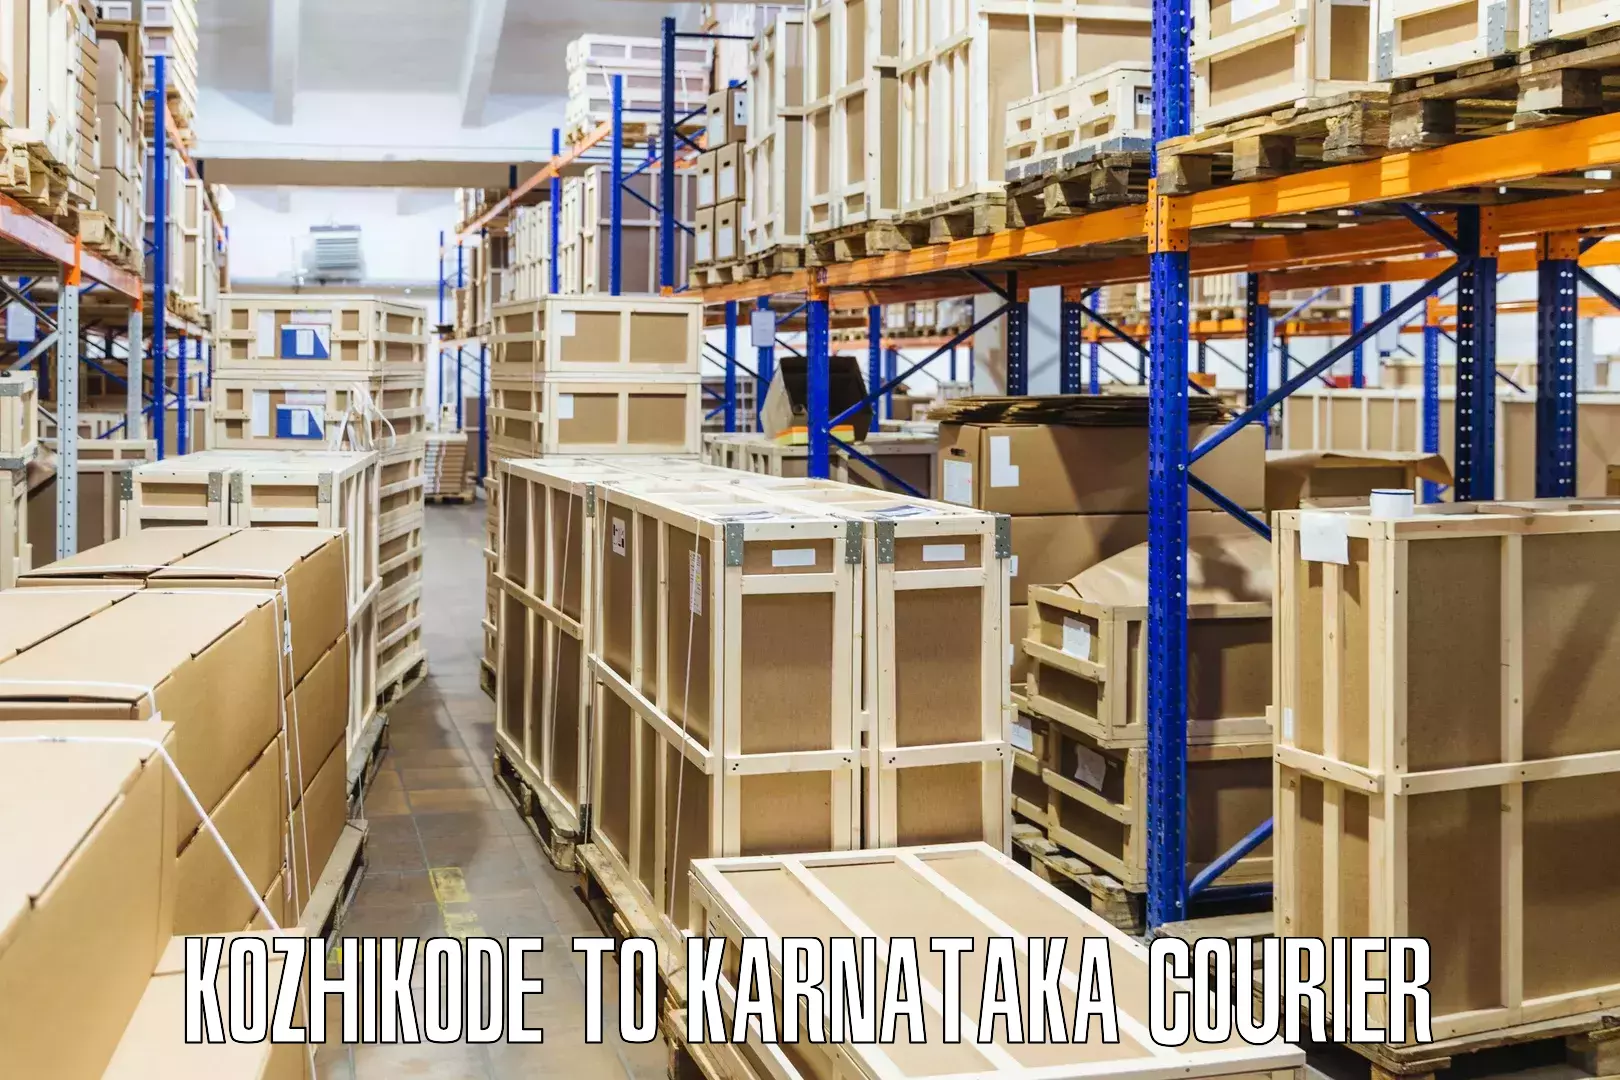 Customized shipping options Kozhikode to Chikkamagalur